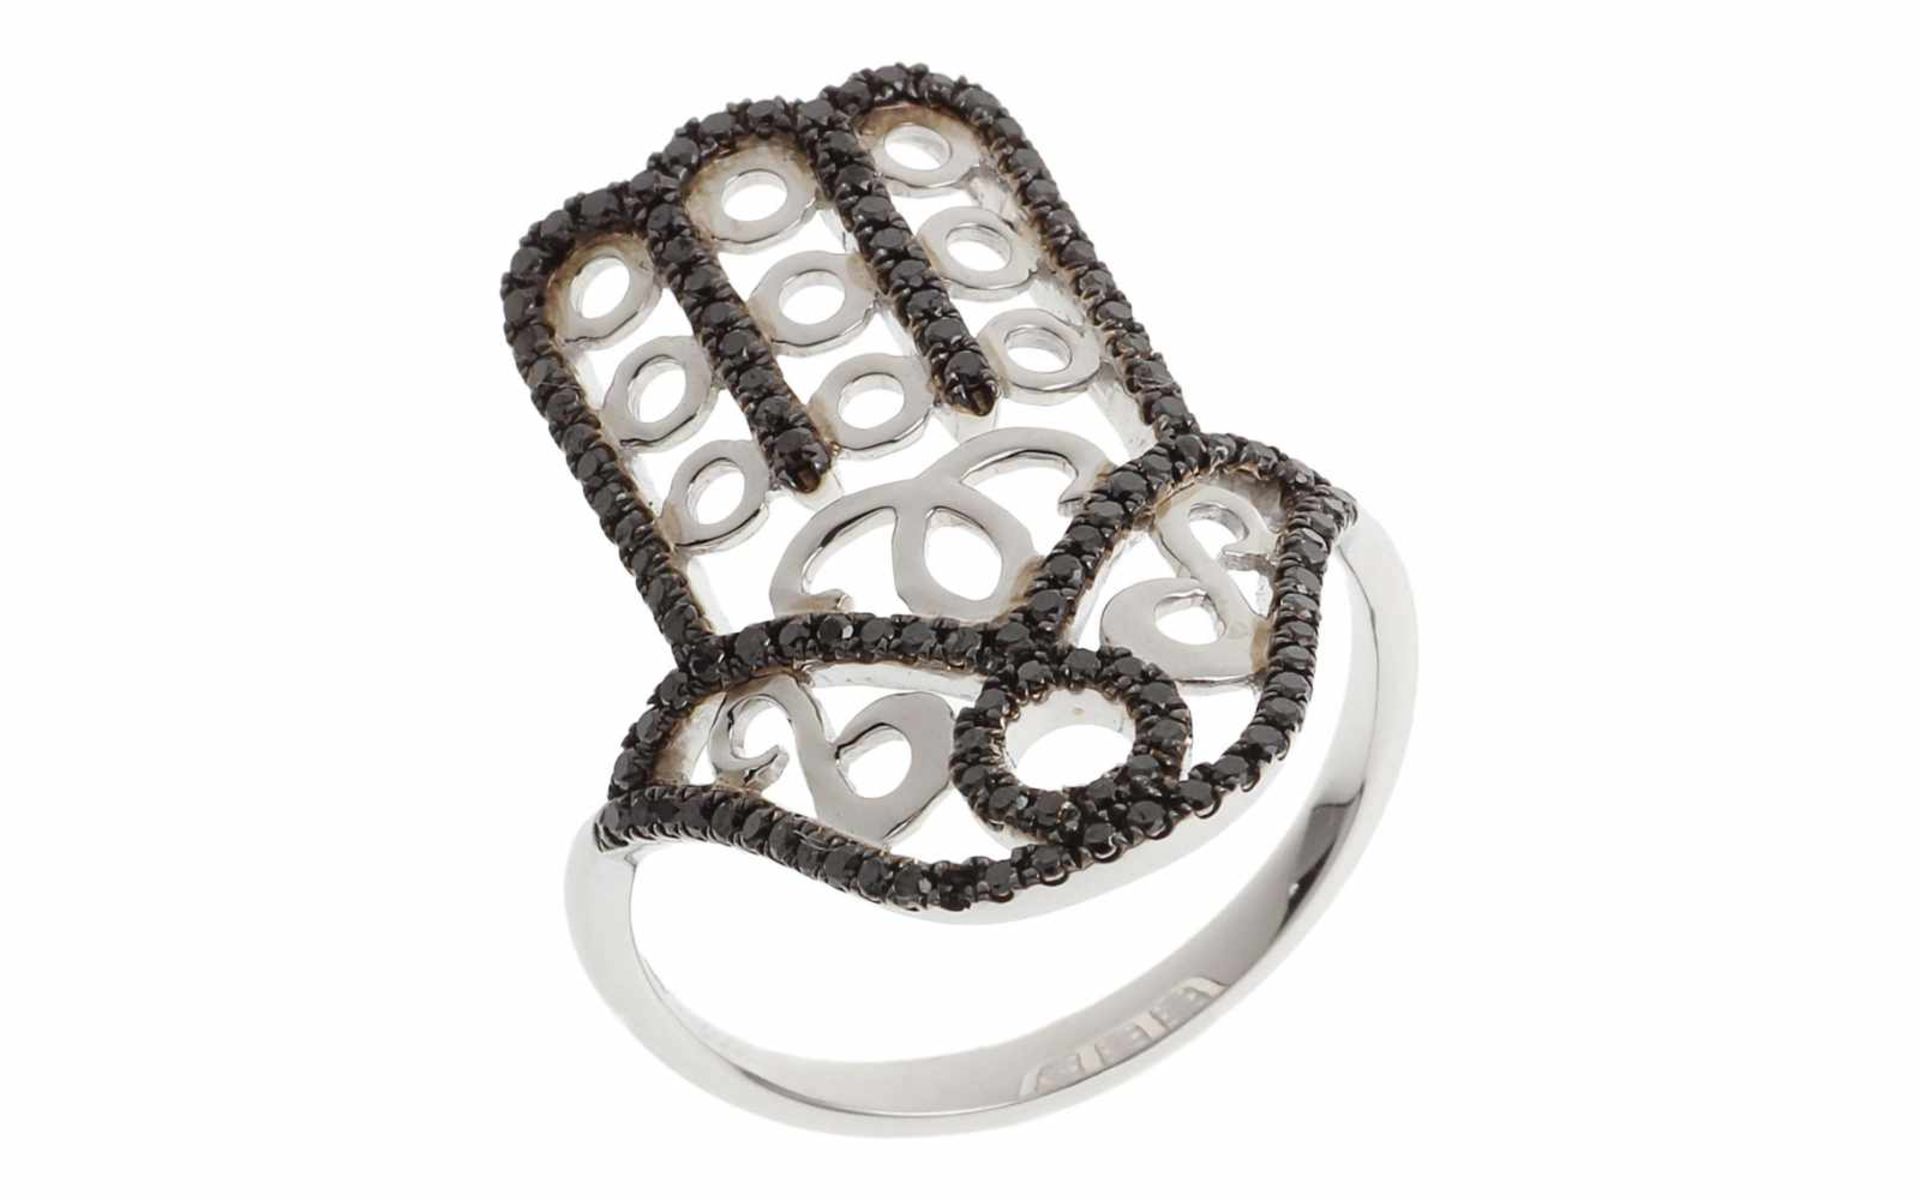 Ring Ring Hand der Fatima 18K WG mit 0,50 ct schwarzen Diamanten, RW: 55, Länge Ringkopf: 1,80 cm,